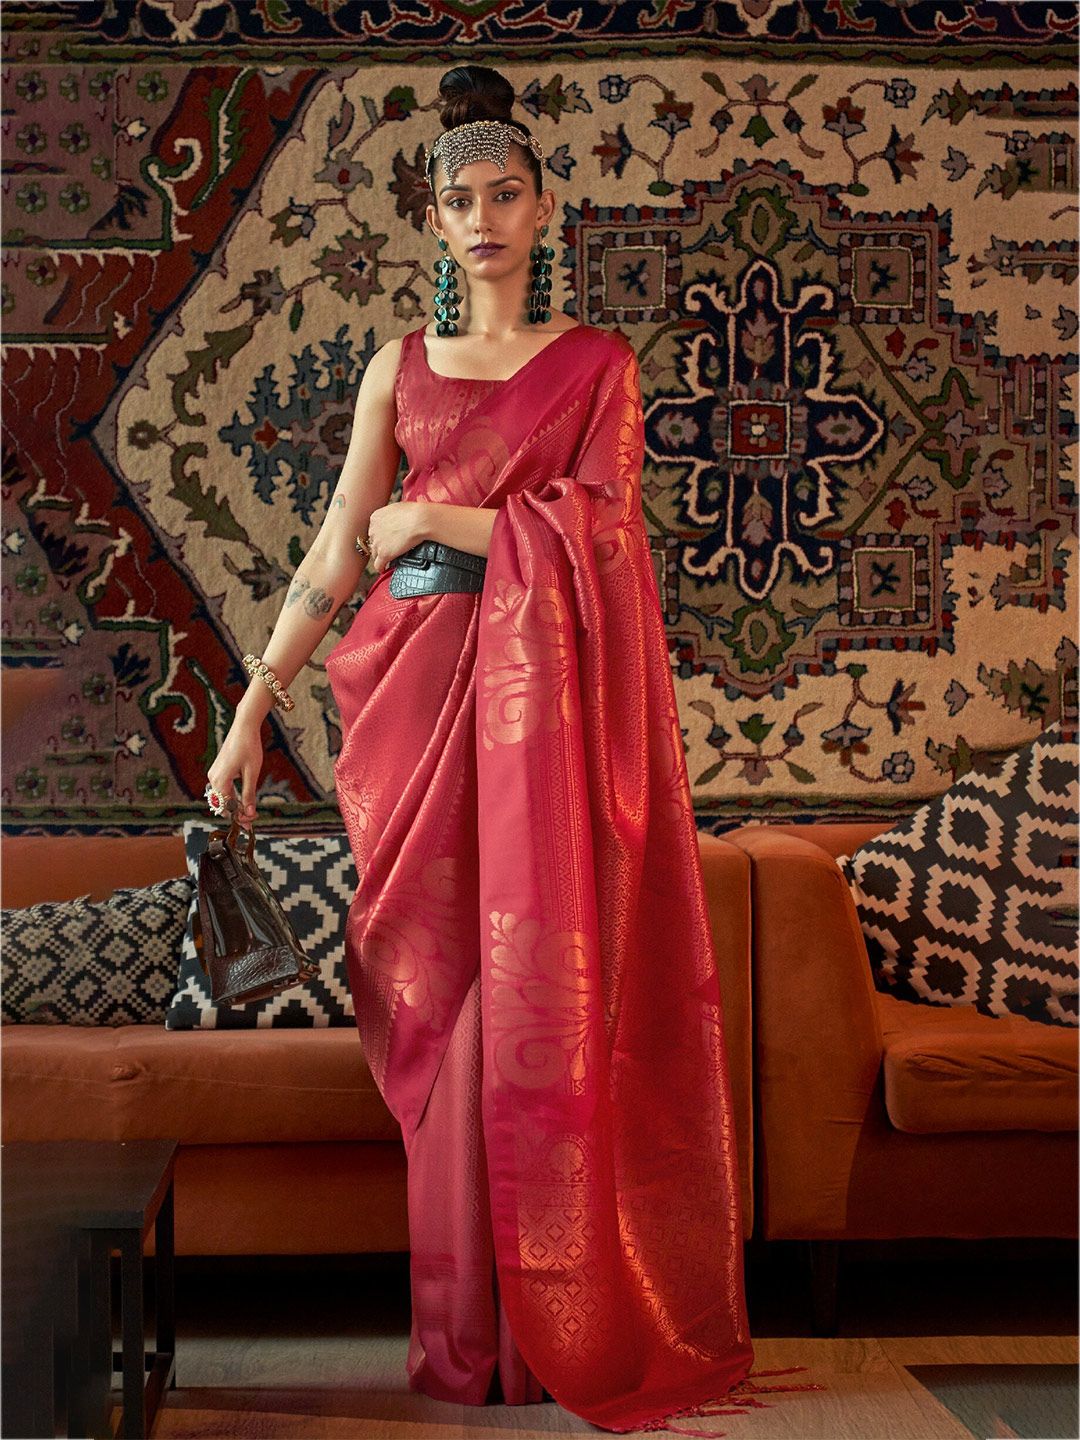 MOKSHA DESIGNS Woven Design Zari Pure Silk Saree Price in India